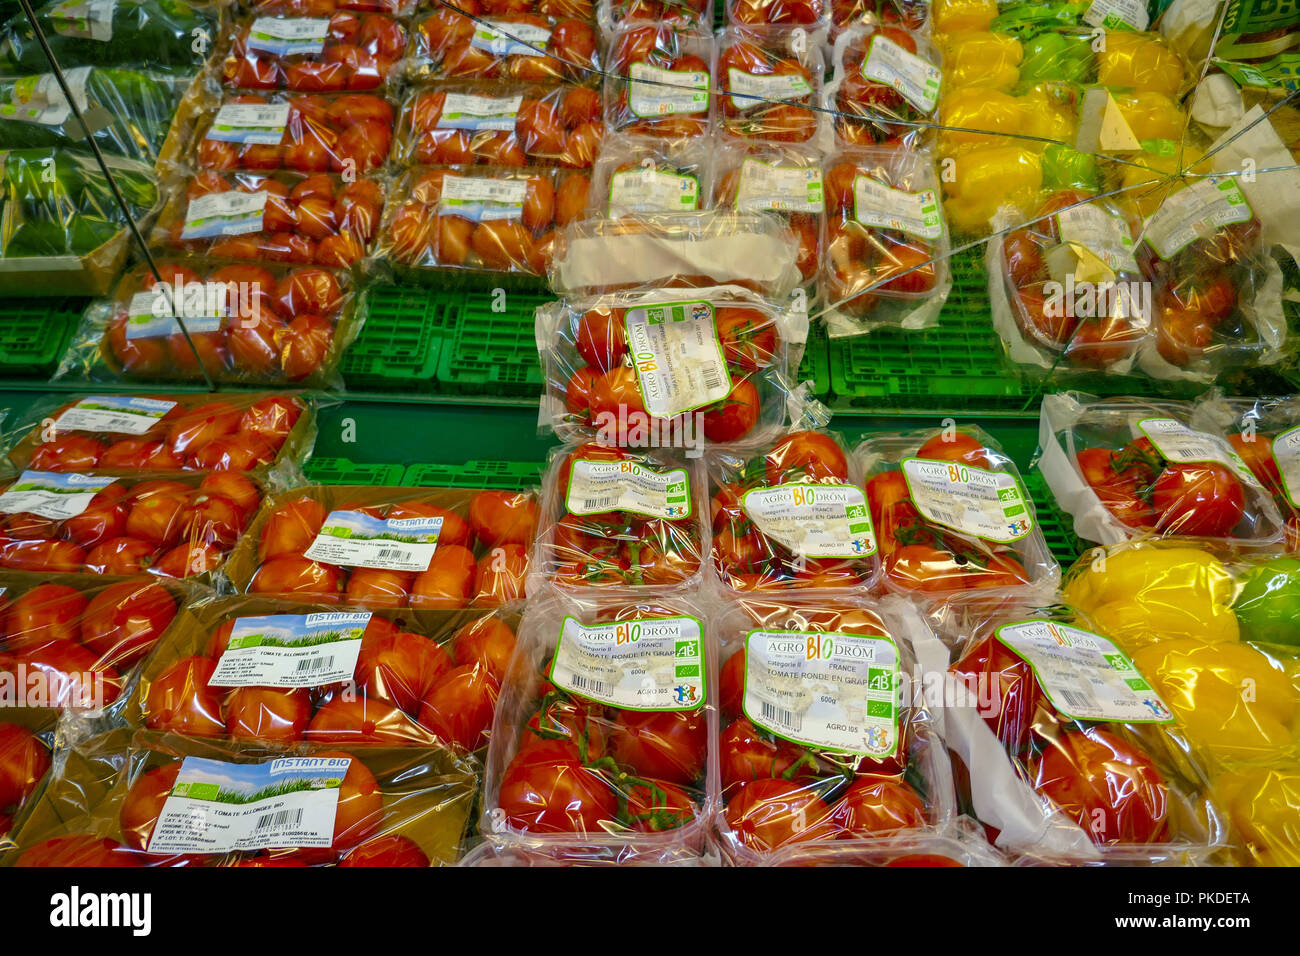 Les tomates et les poires, les fruits présentés en plastique dans un supermarché français Banque D'Images